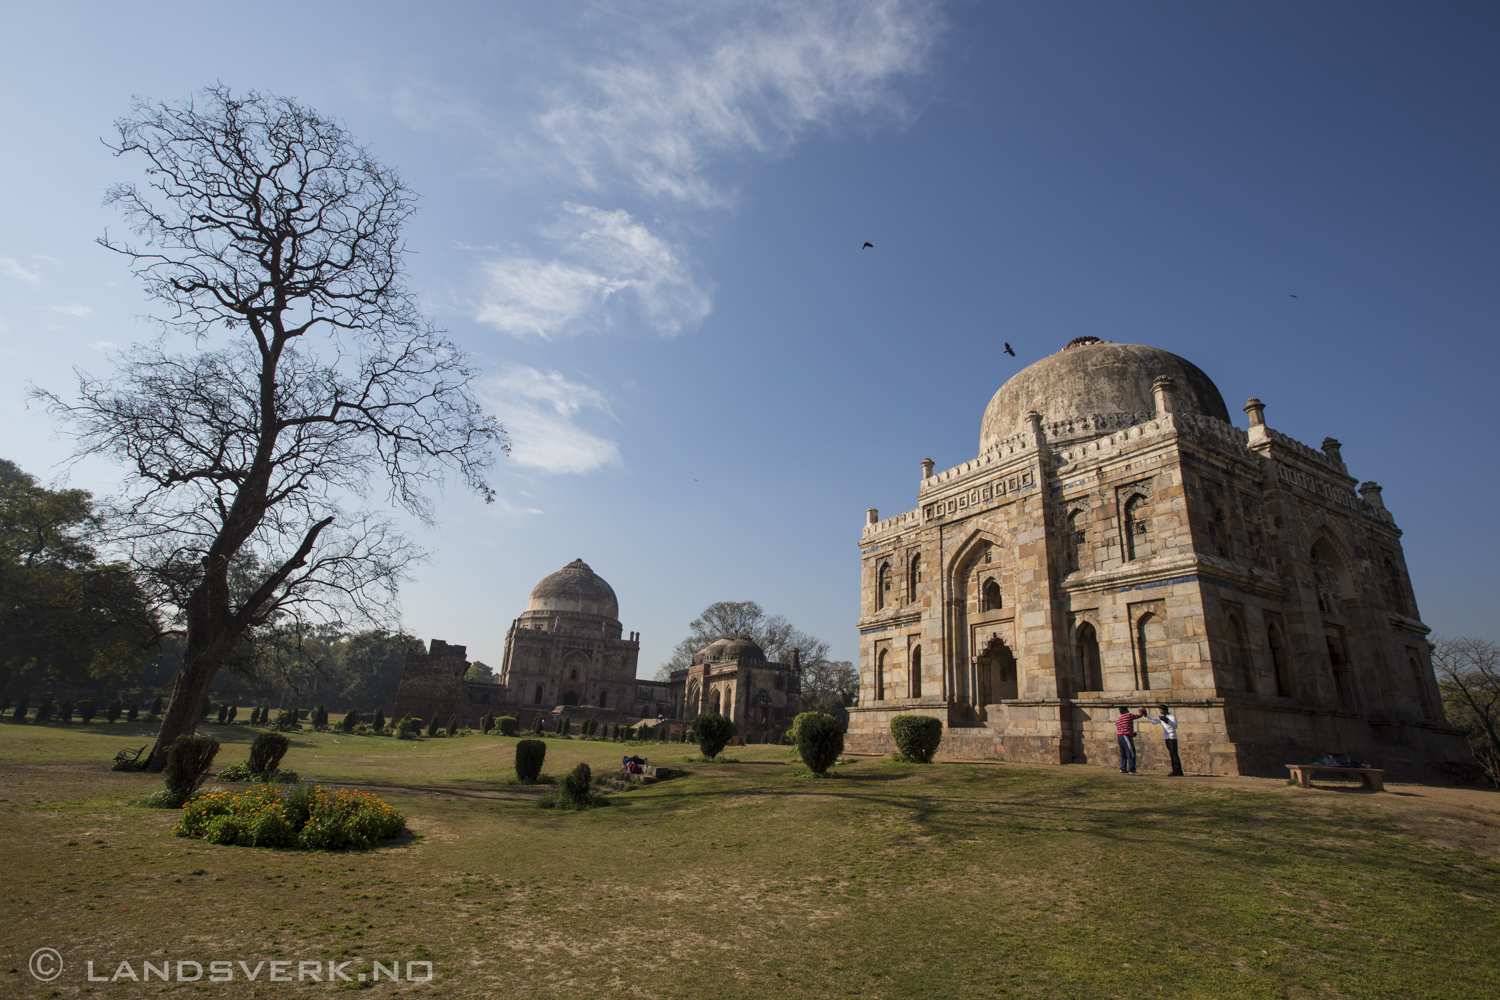 Lodi Garden, New Delhi, India. 

(Canon EOS 5D Mark III / Canon EF 16-35mm f/2.8 L II USM)